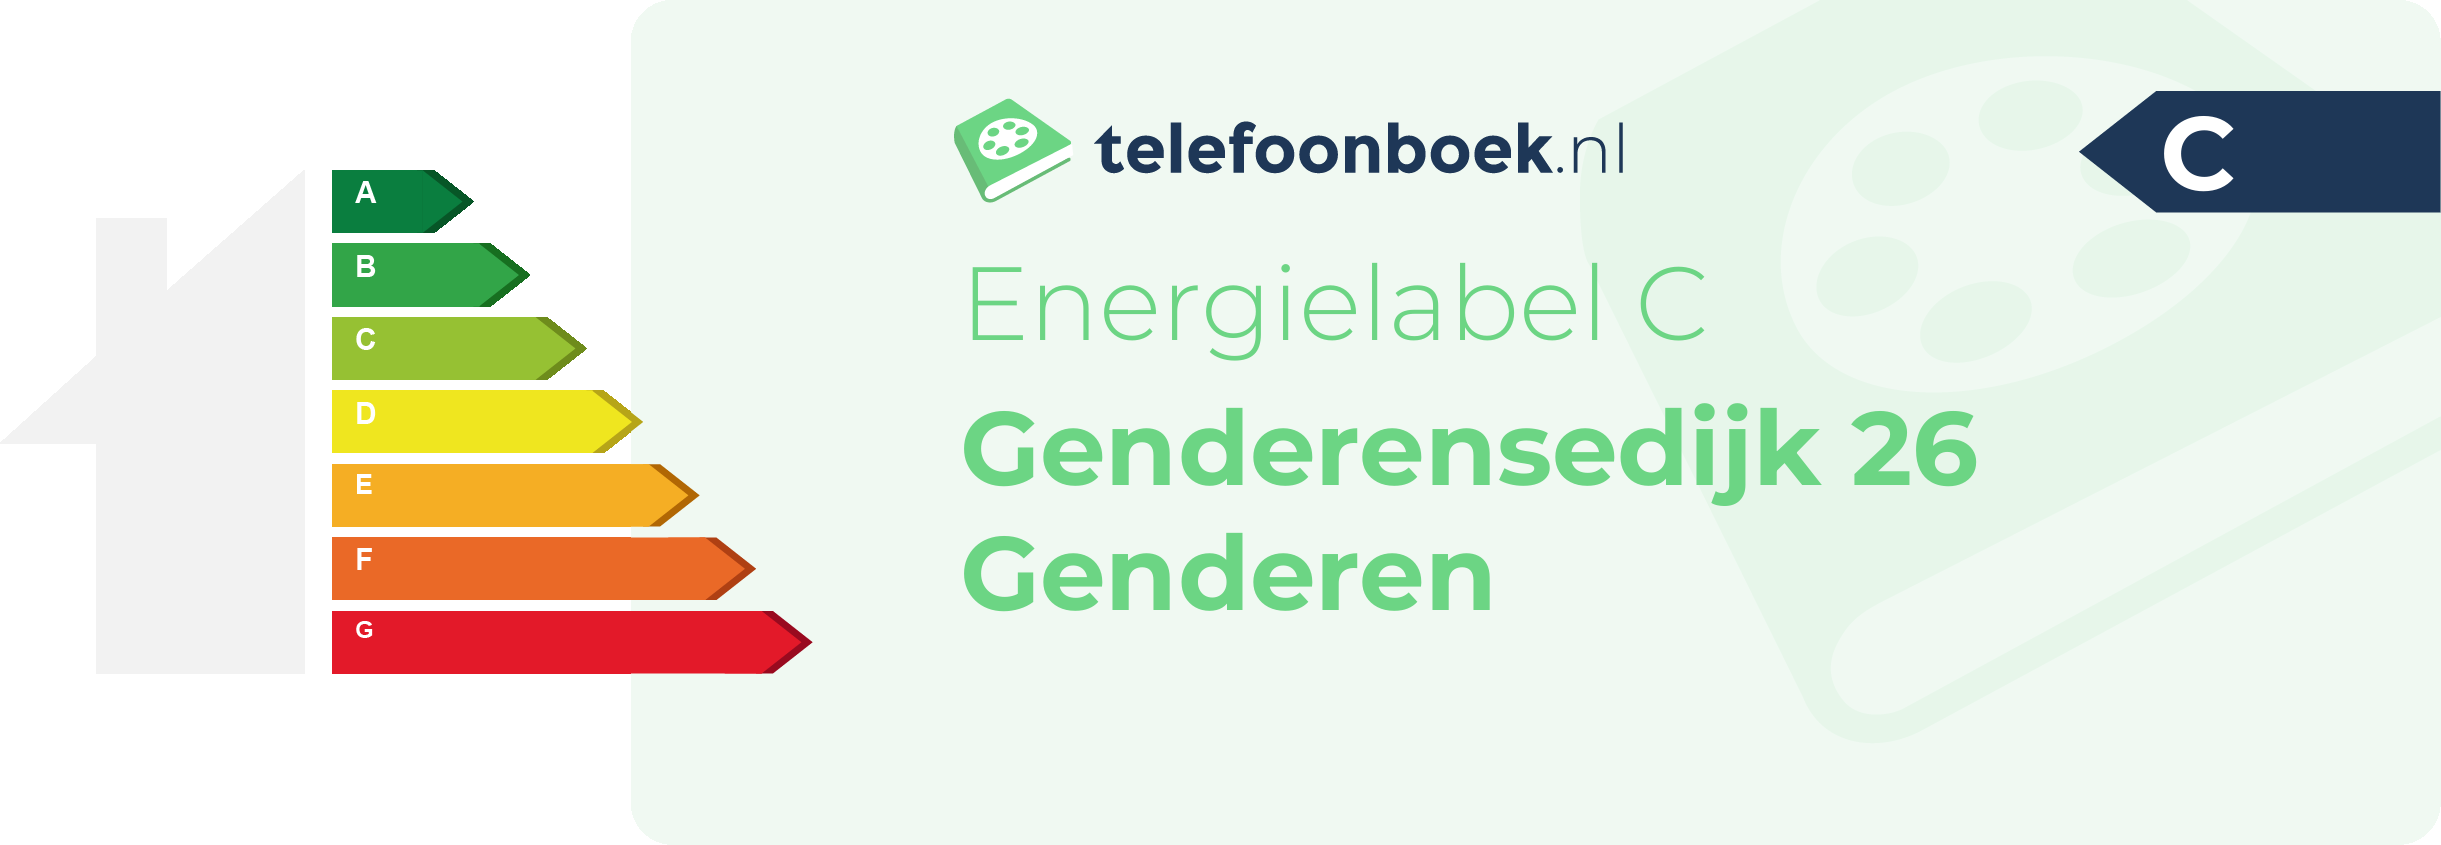 Energielabel Genderensedijk 26 Genderen